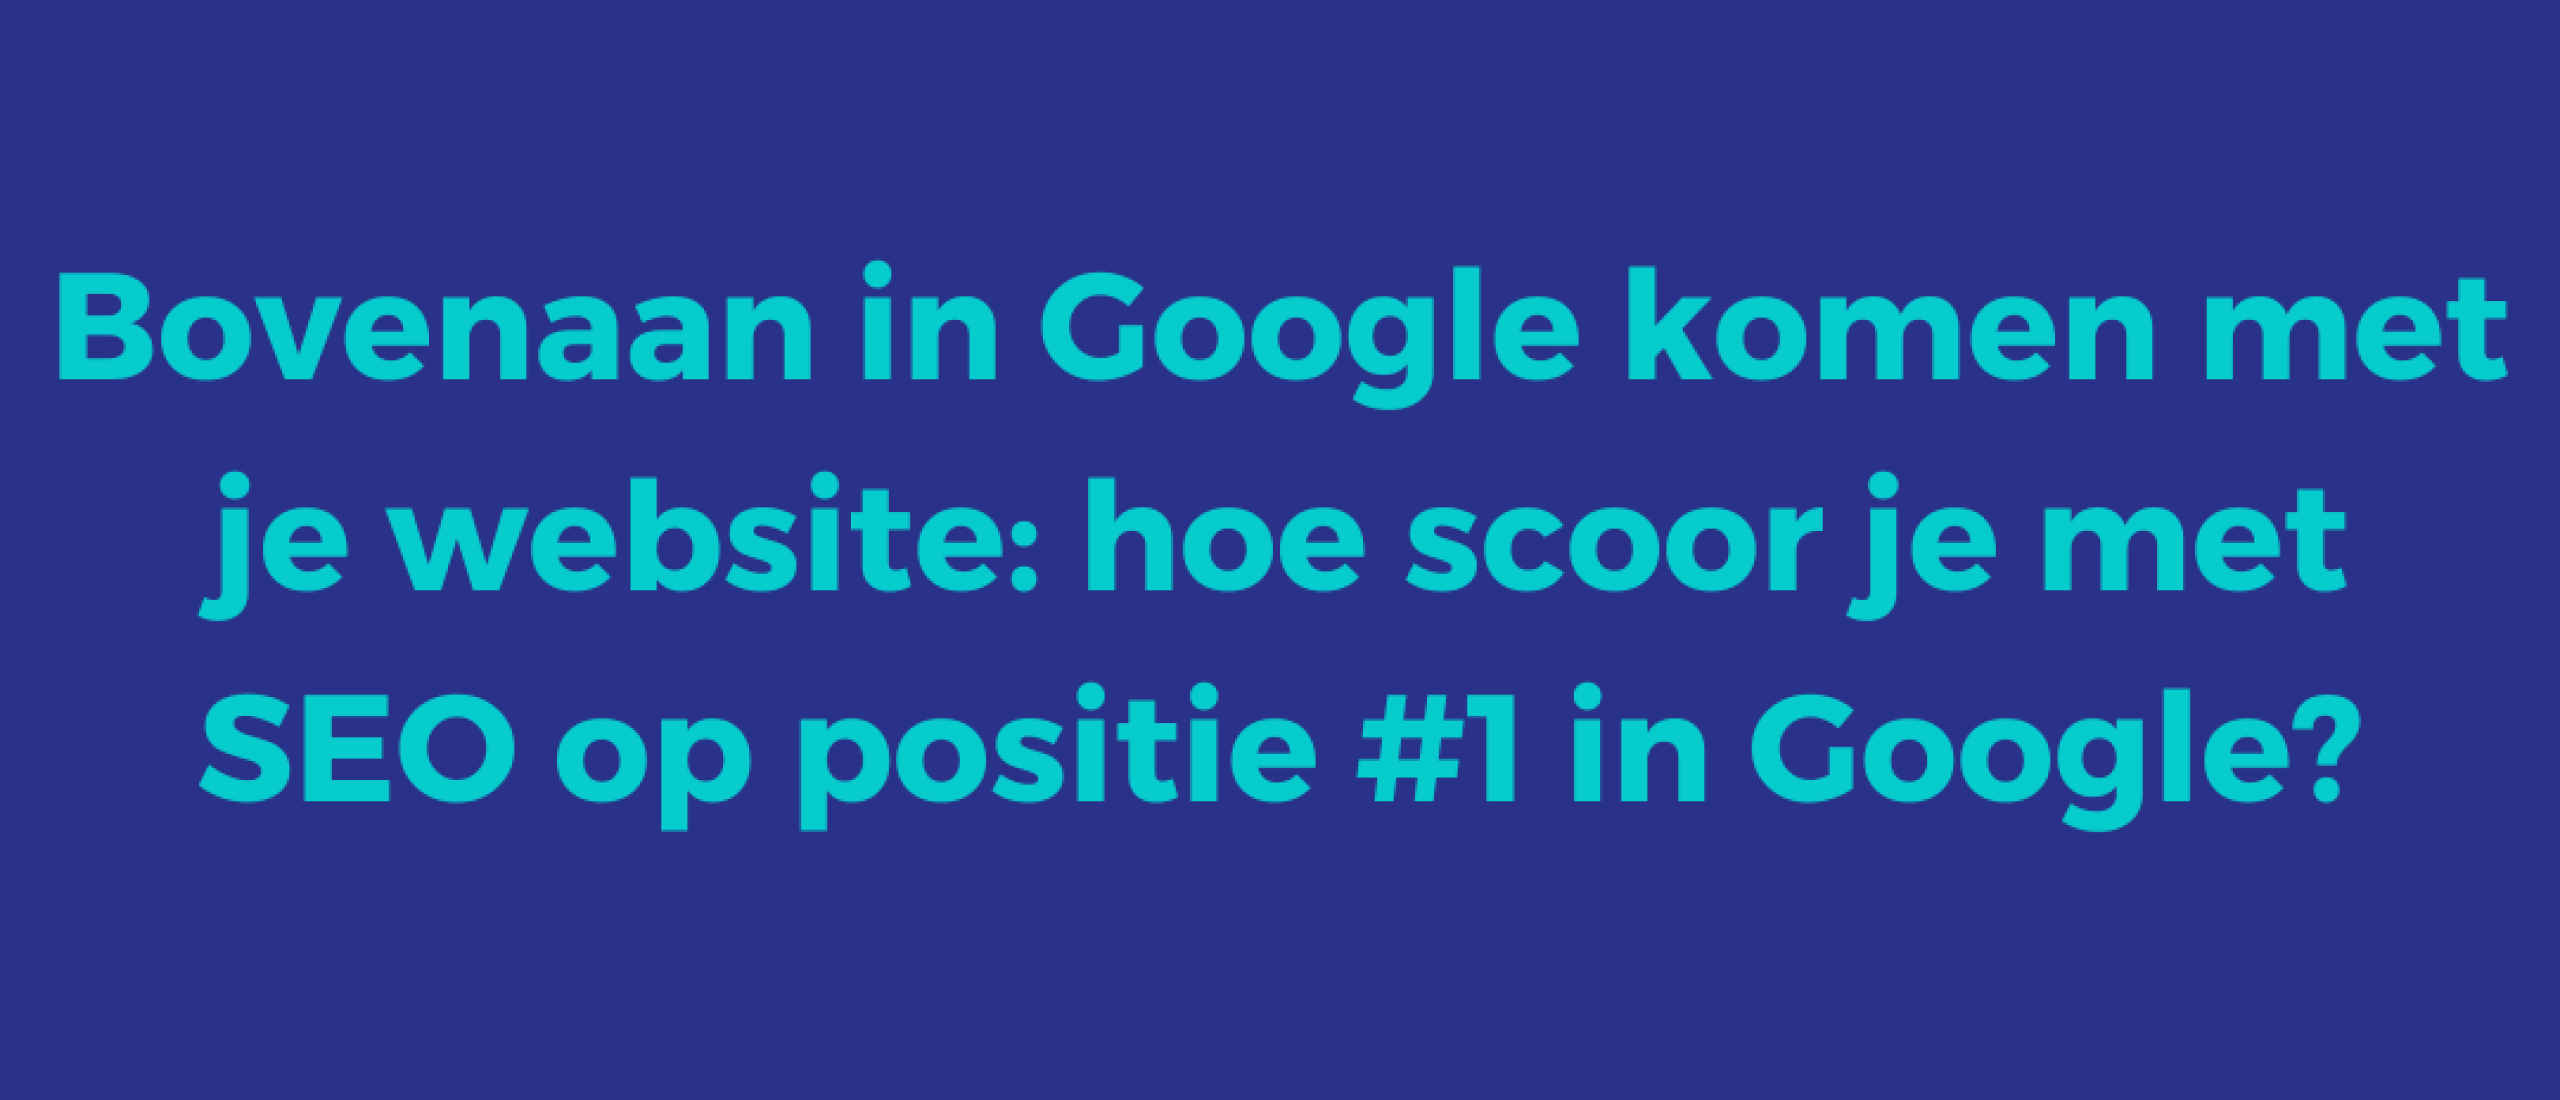 Bovenaan in Google komen met je website | Hoe scoor je met SEO op positie #1 in Google?